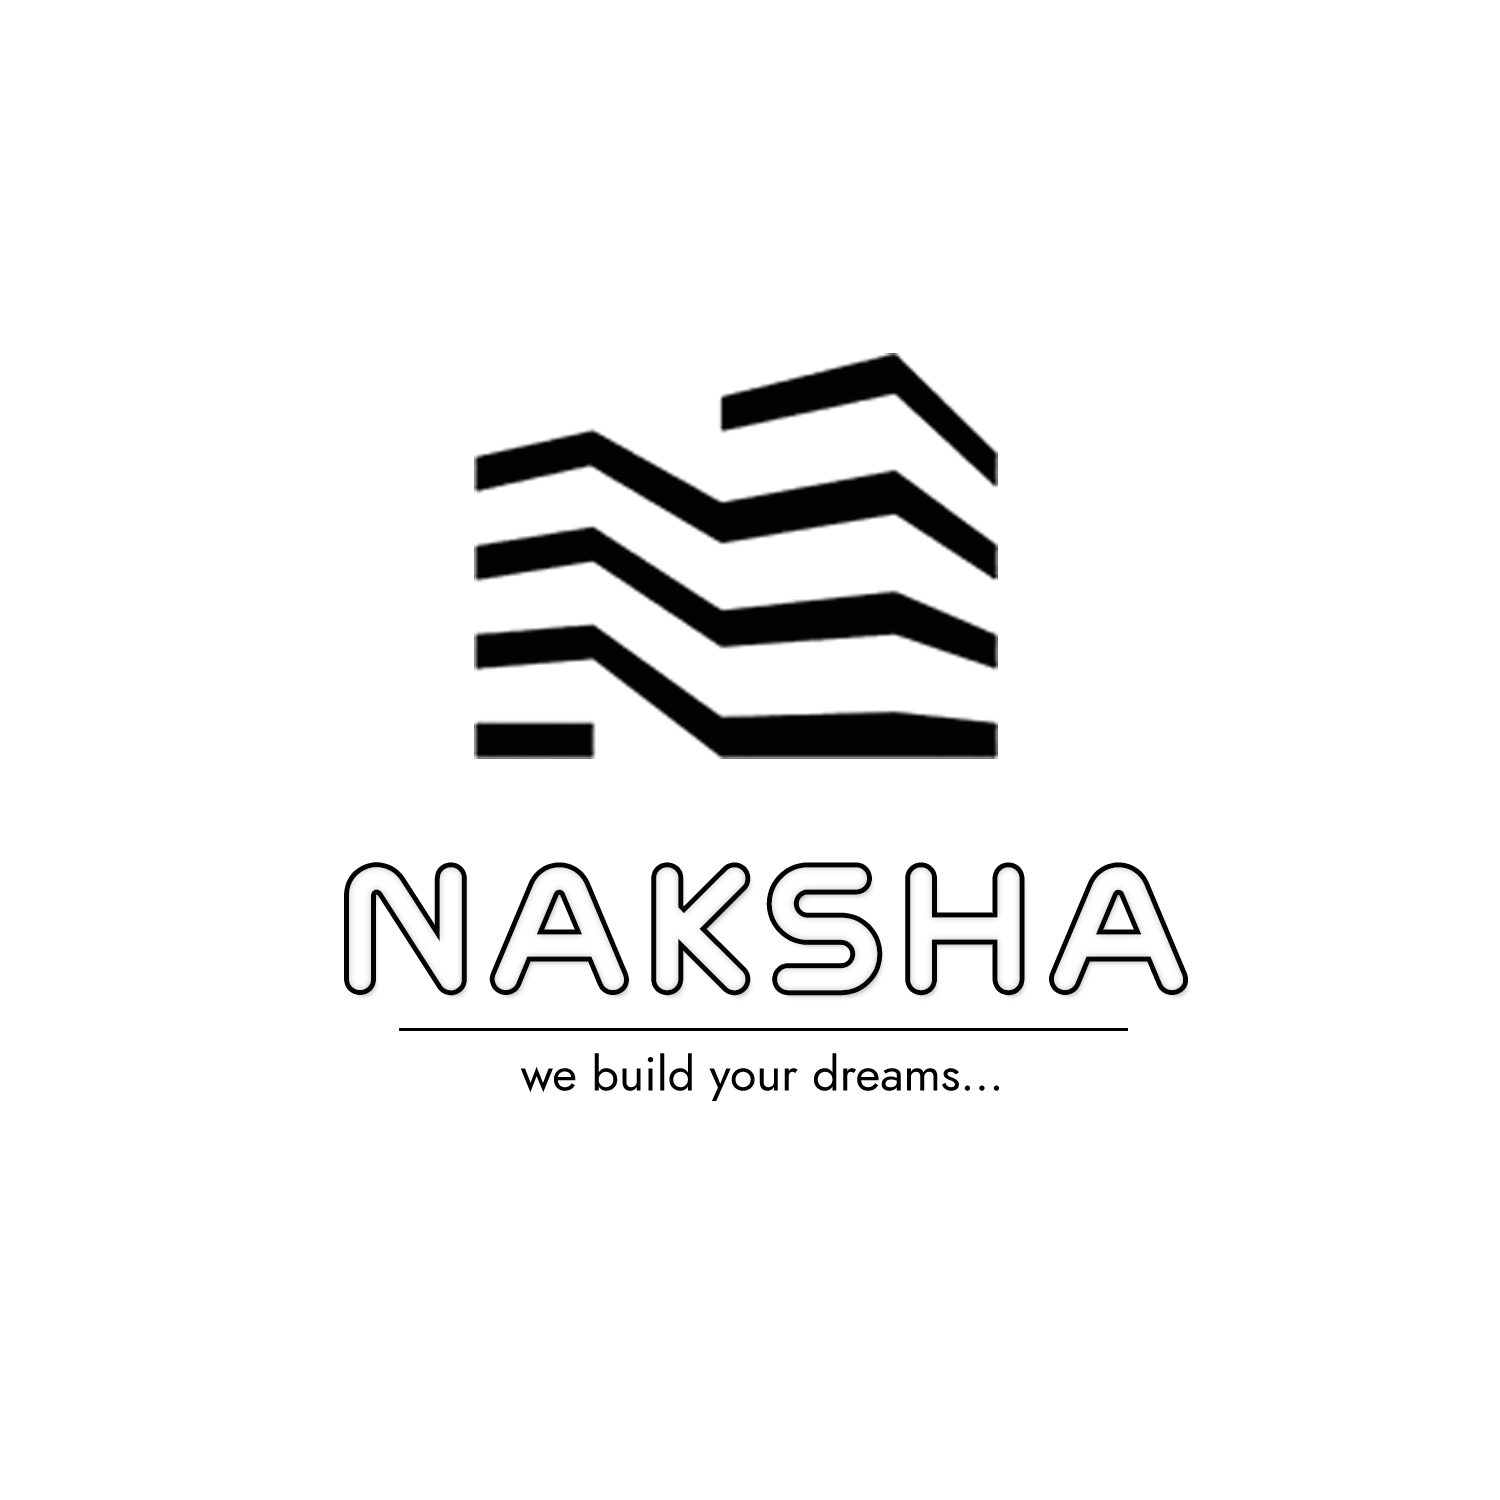 Naksha Construction|Legal Services|Professional Services